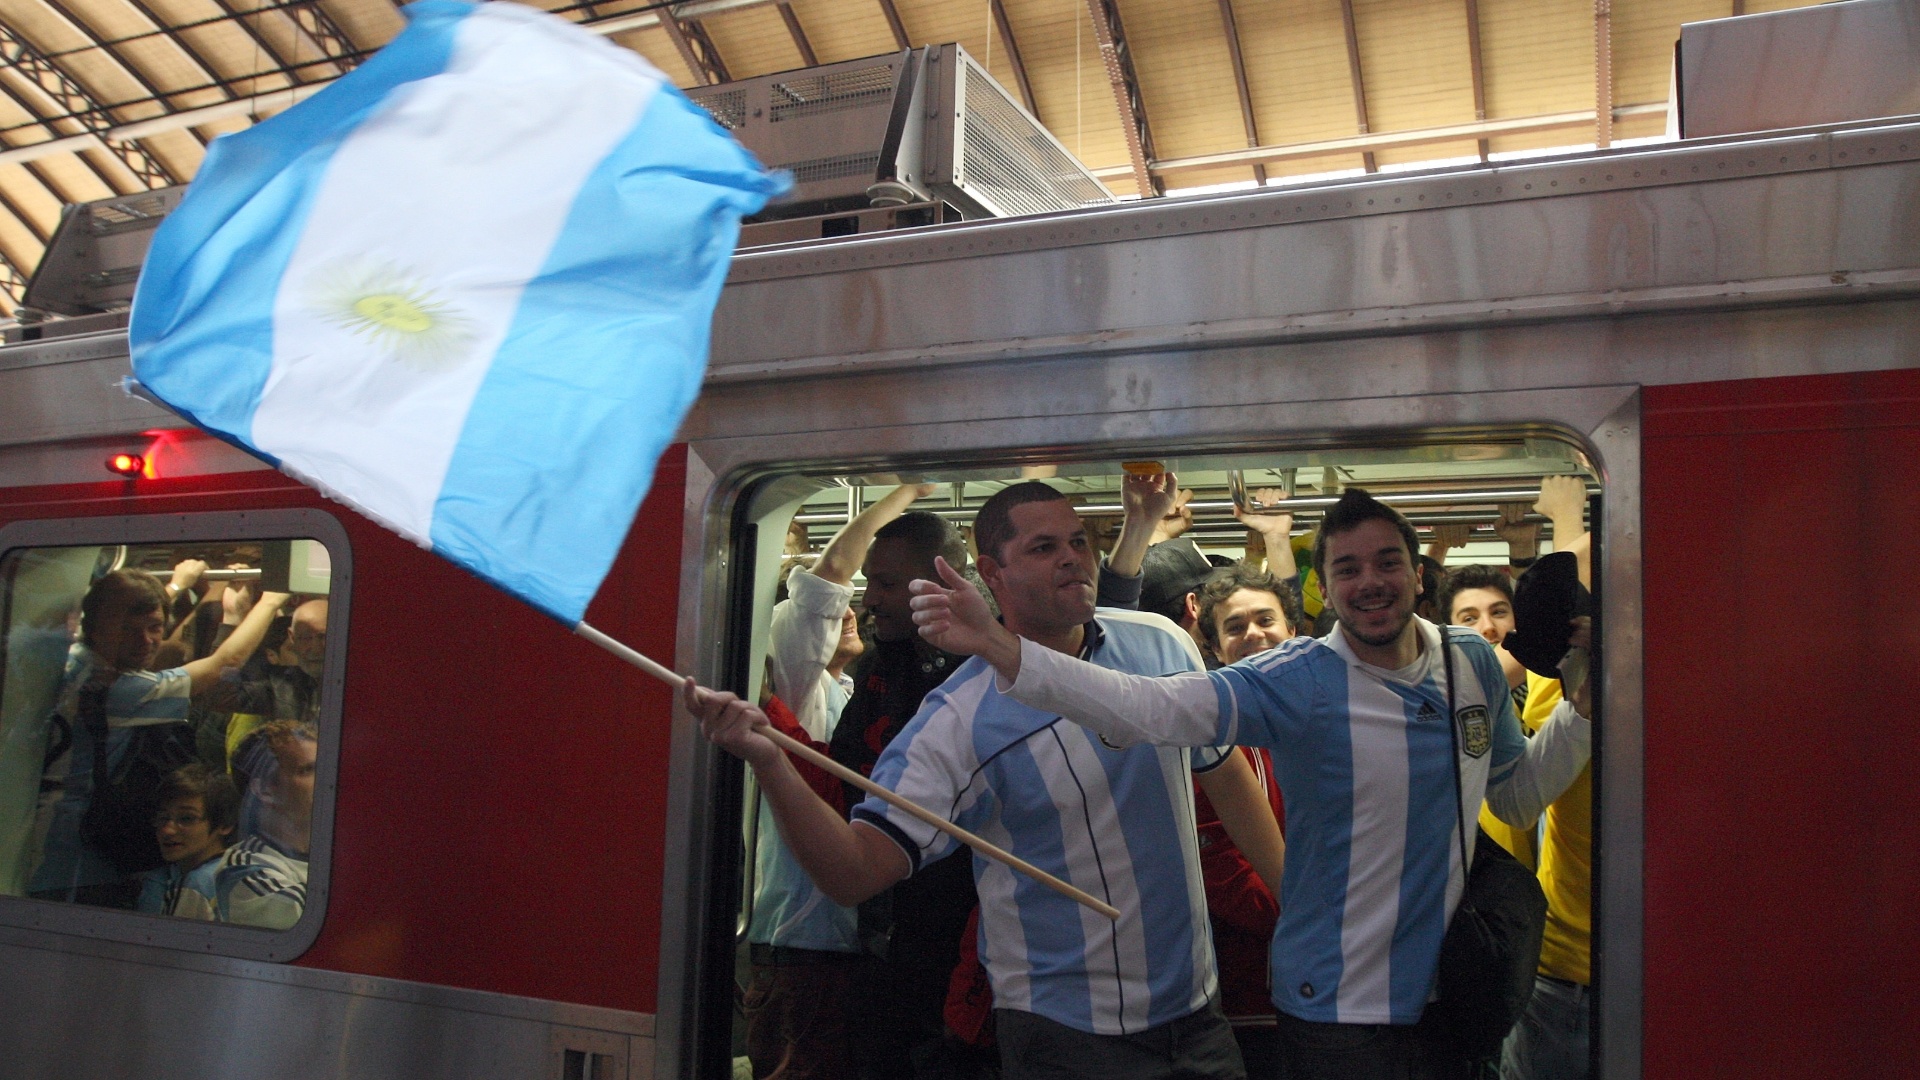 01.jul.2014 - Argentinos pegam o Expresso Copa rumo ao Itaquerão para o jogo contra a Suíça